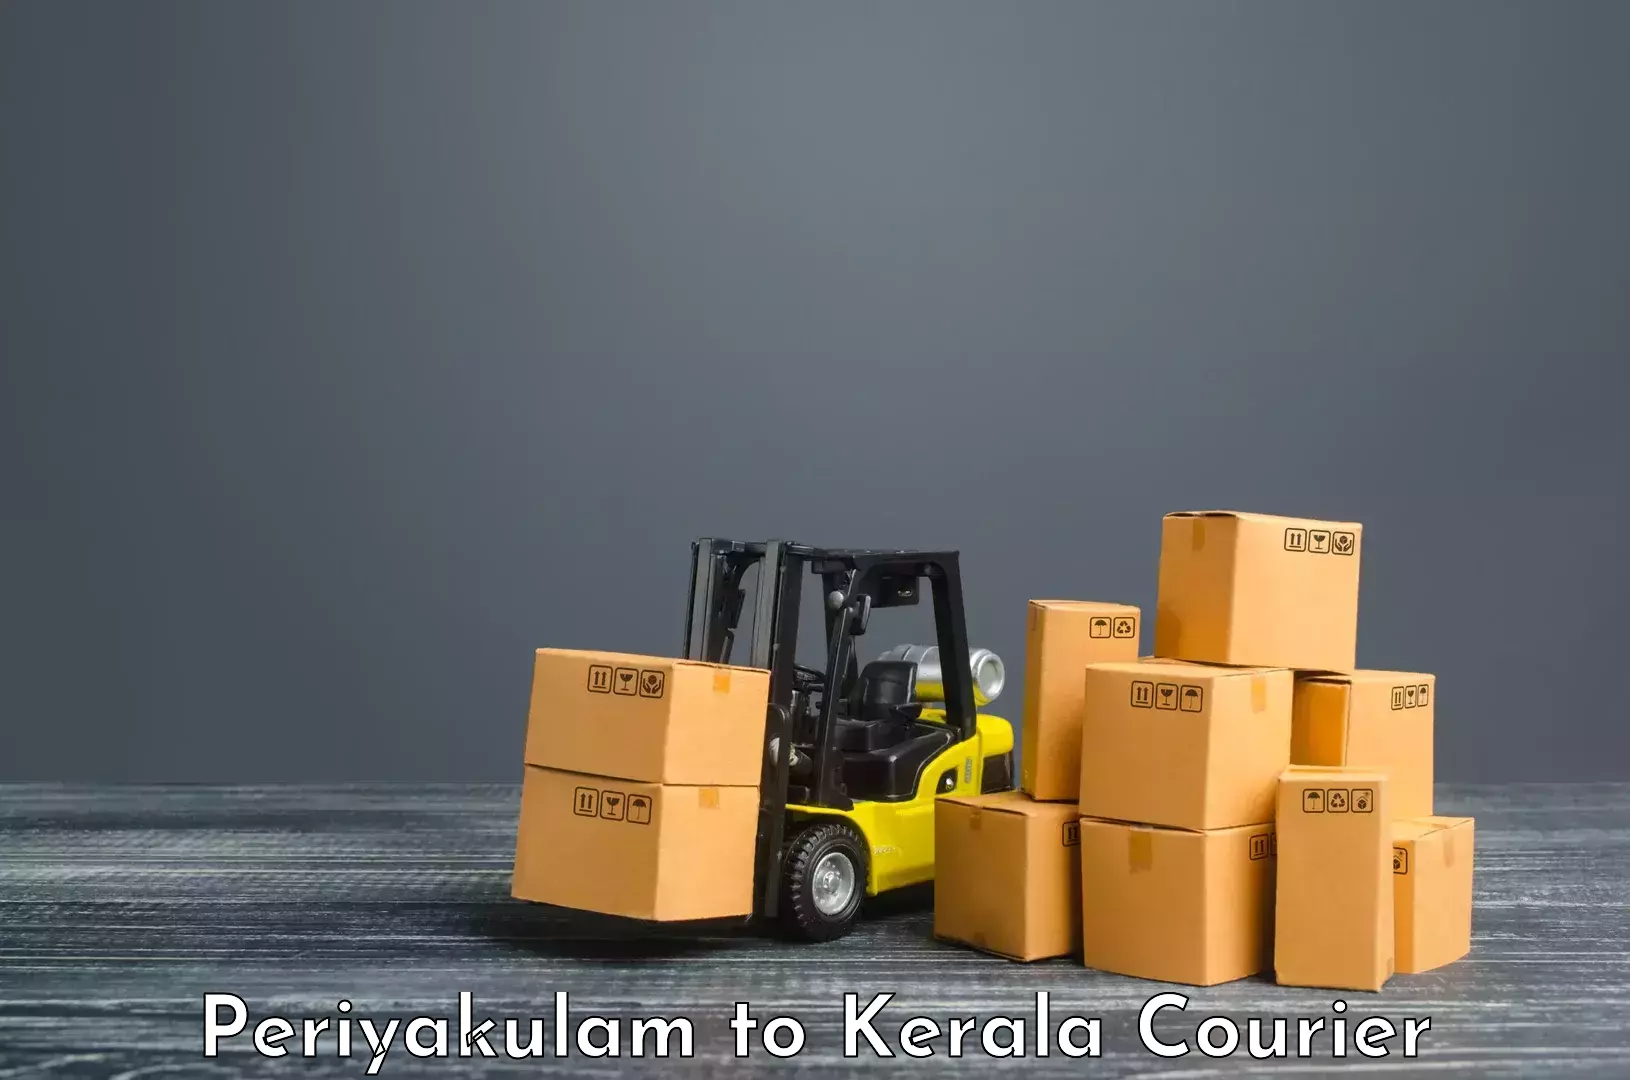 Online courier booking Periyakulam to Perumbavoor